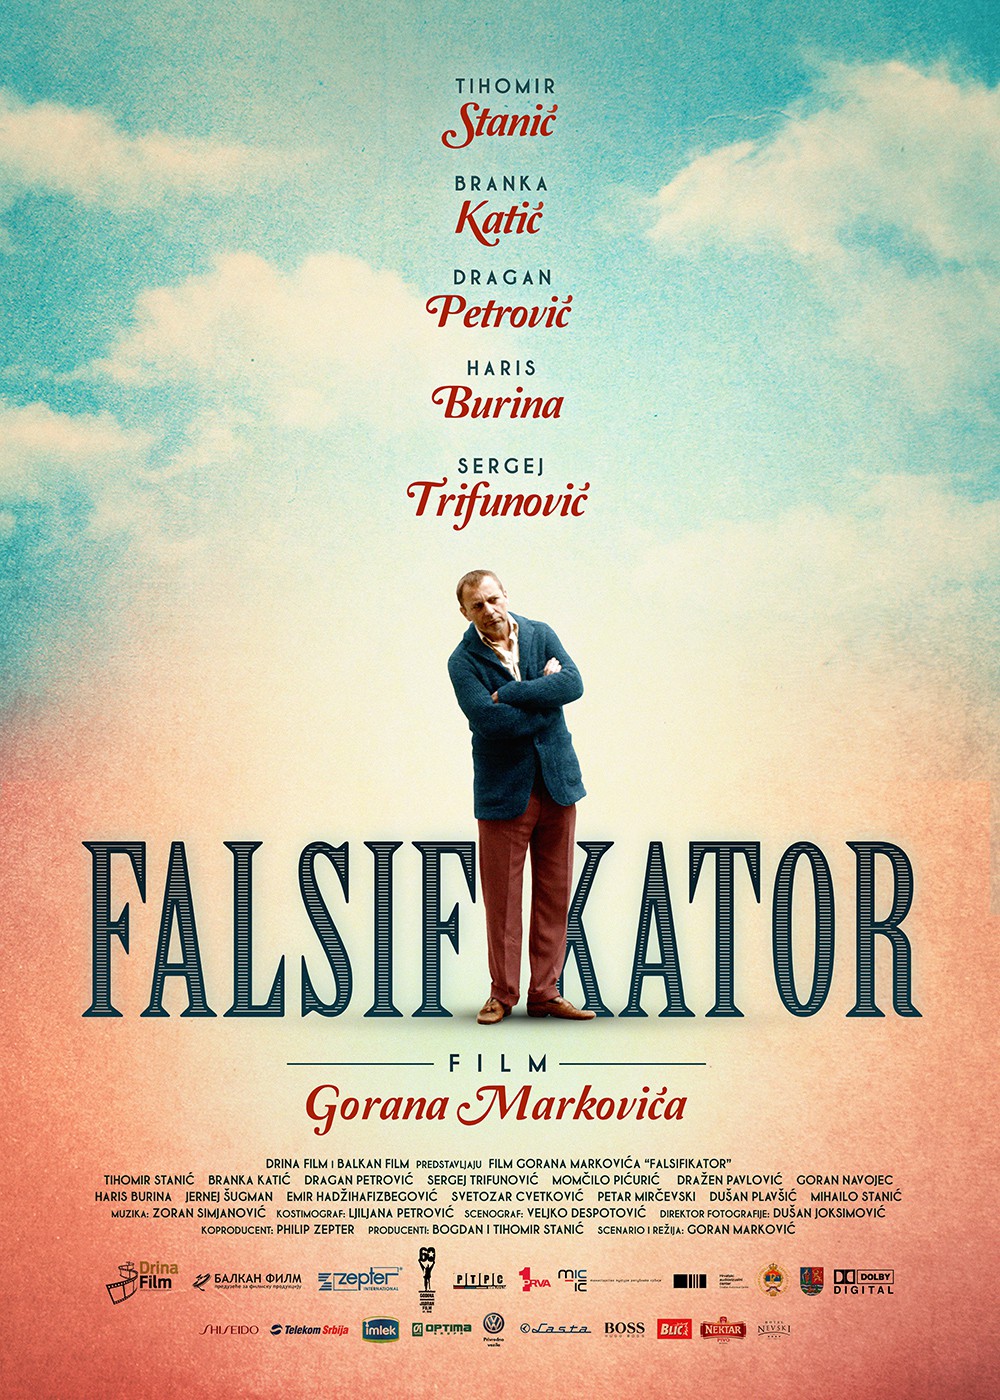 Extra Large Movie Poster Image for Falsifikator 